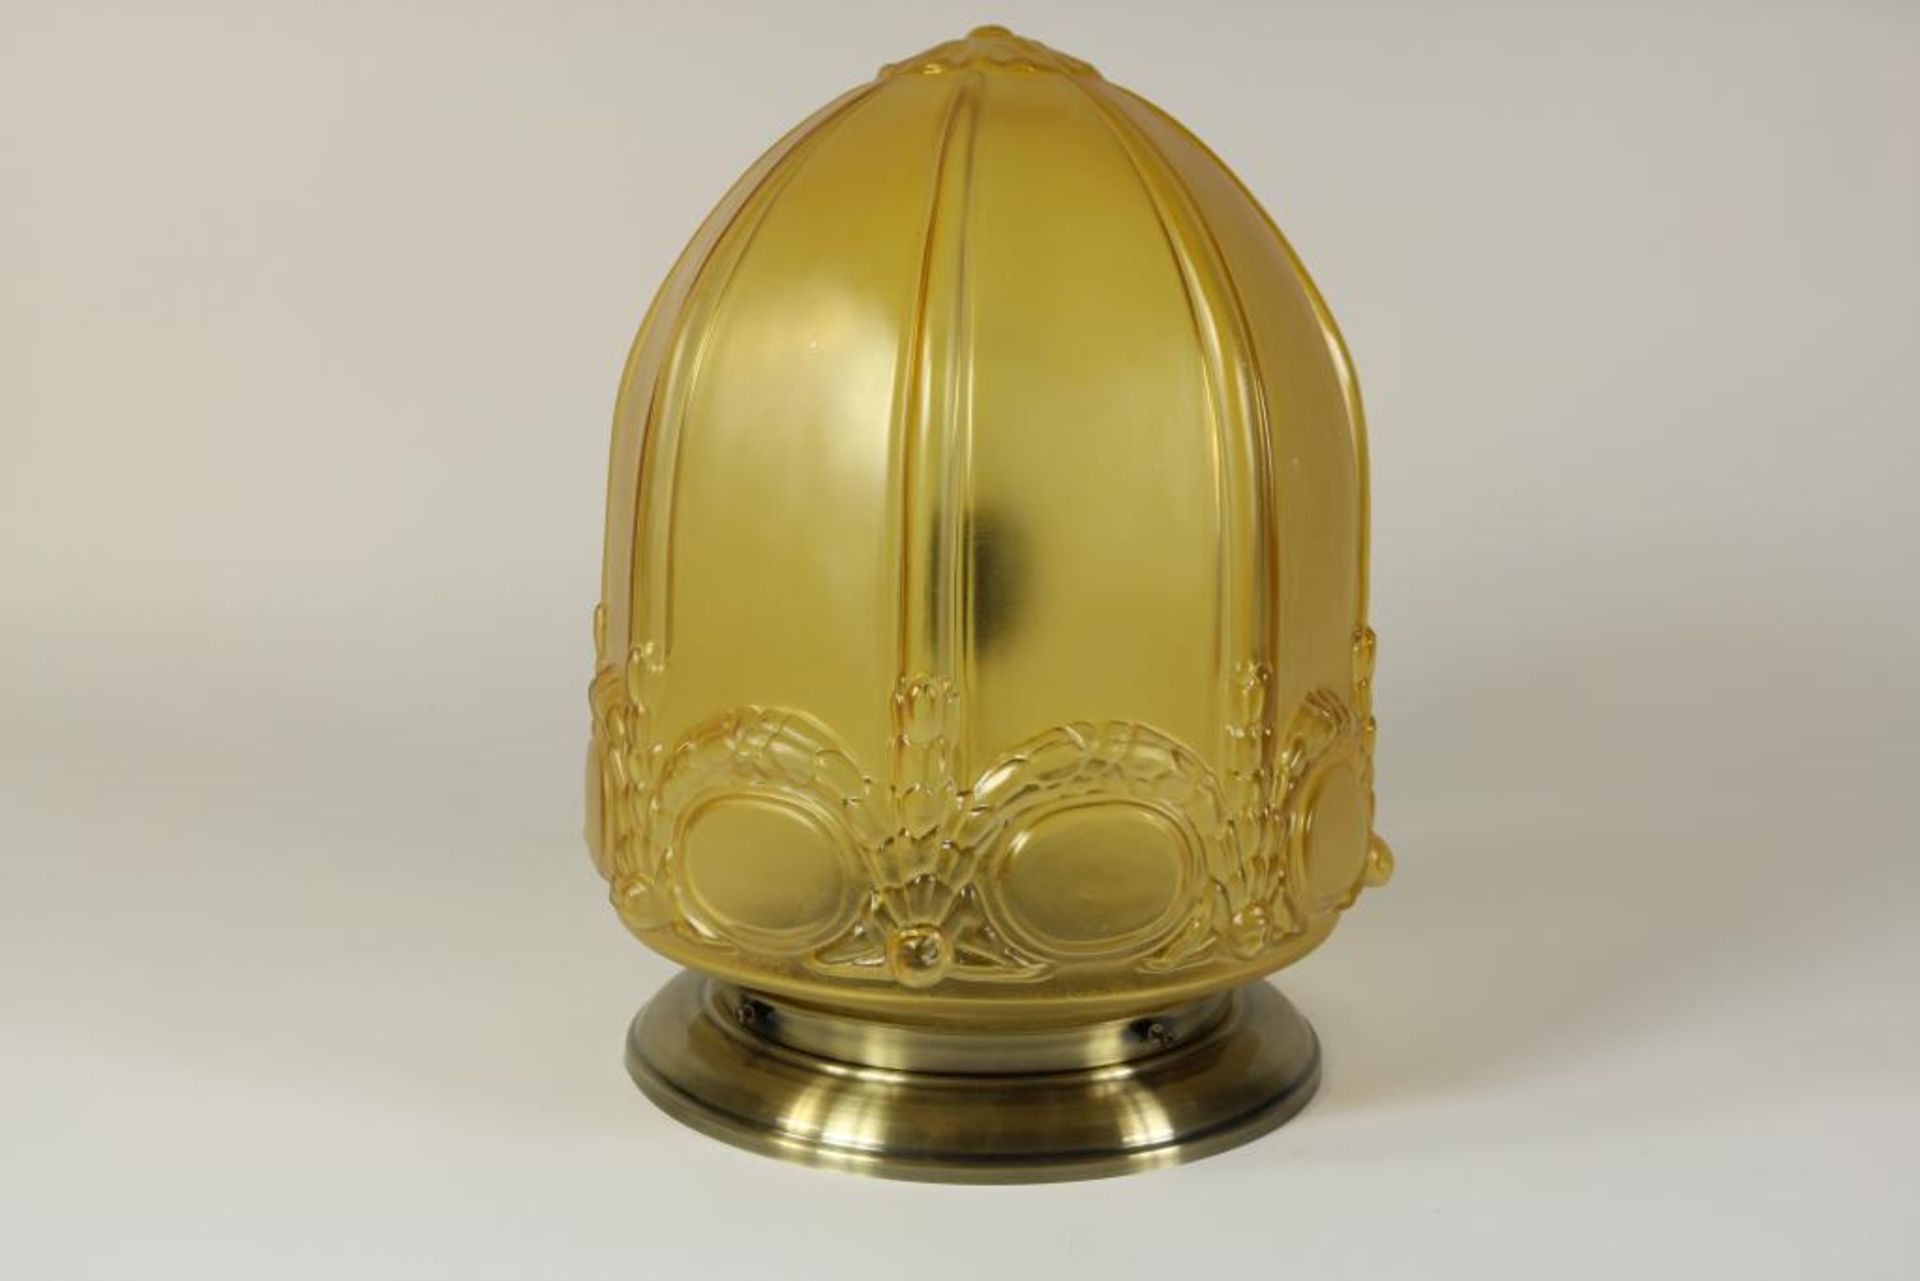 Plafonniere lamp met geel glazen kap met relief van guirlandes, h. 40 cm.